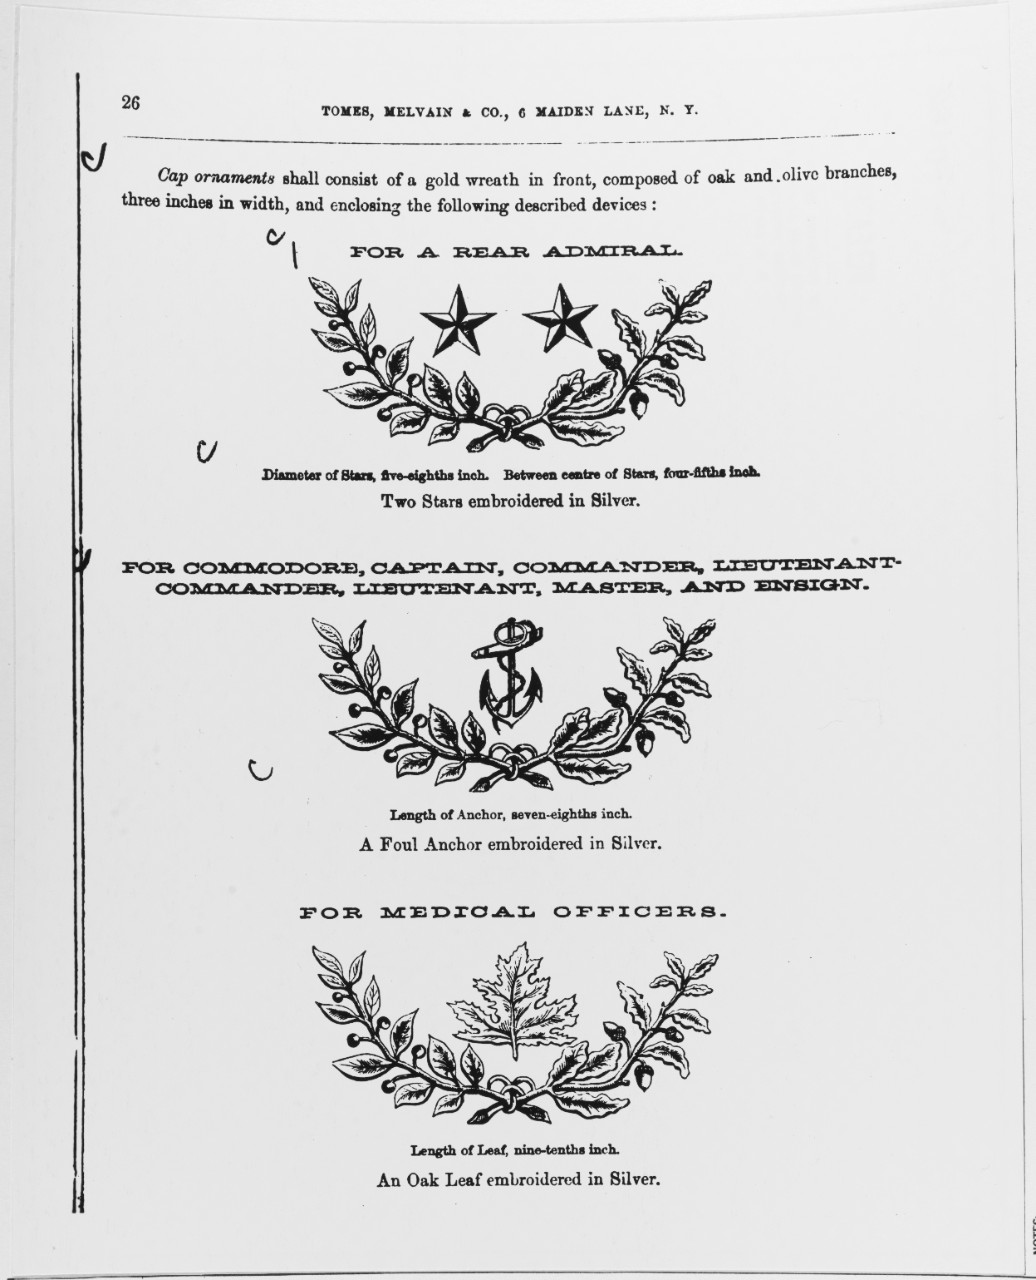 Uniform Regulations, 1864. Cap Ornaments for Rear Admiral, Commodore, Captain, Commander, Lieutenant Commander, Lieutenant, Master and Ensign, for Medical Officers